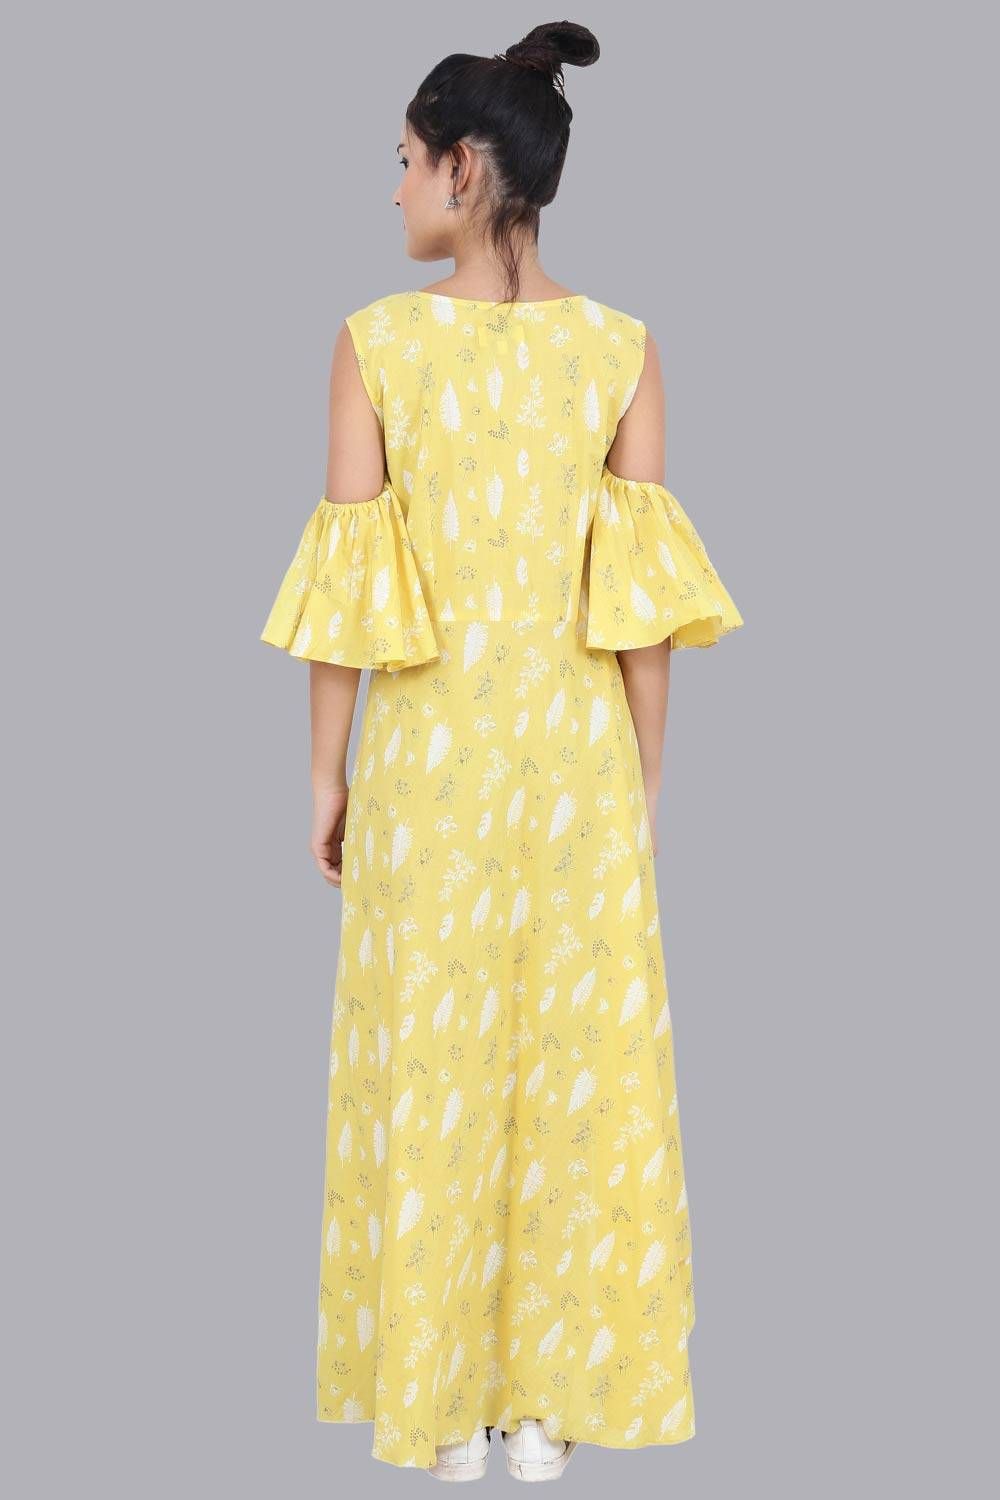 Women's Yellow Print Summer Maxi Dress